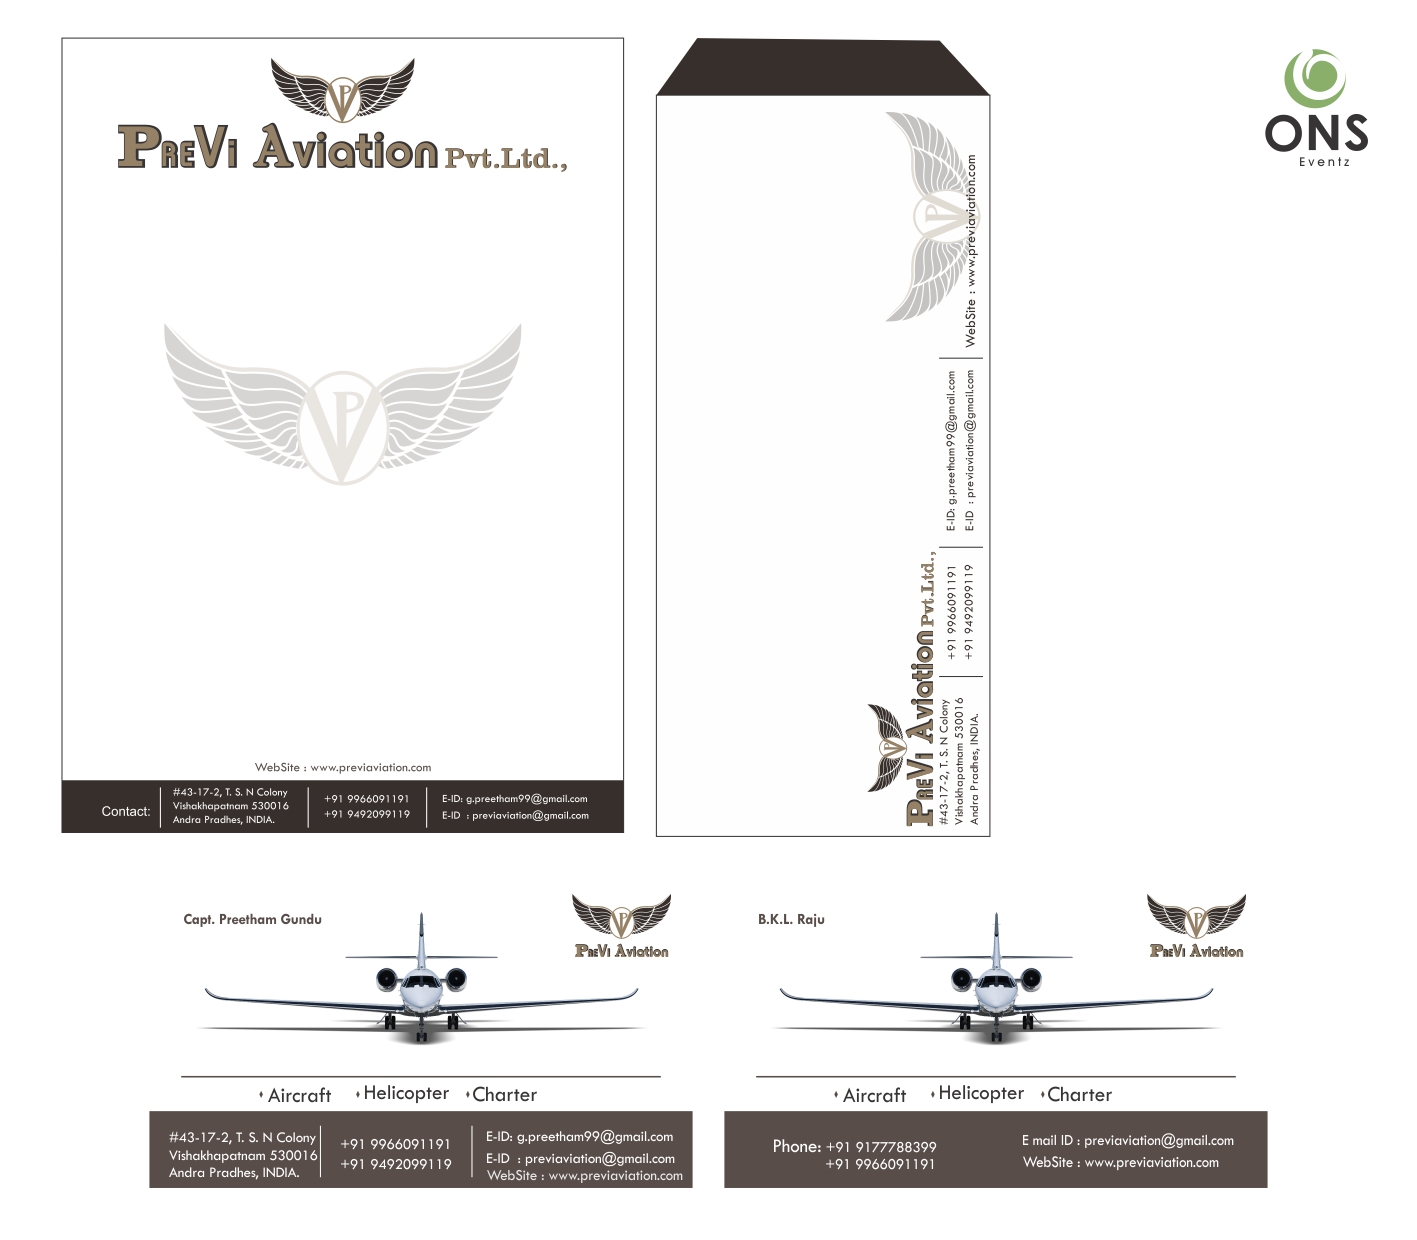 PreeVi Aviation Pvt. Ltd.,